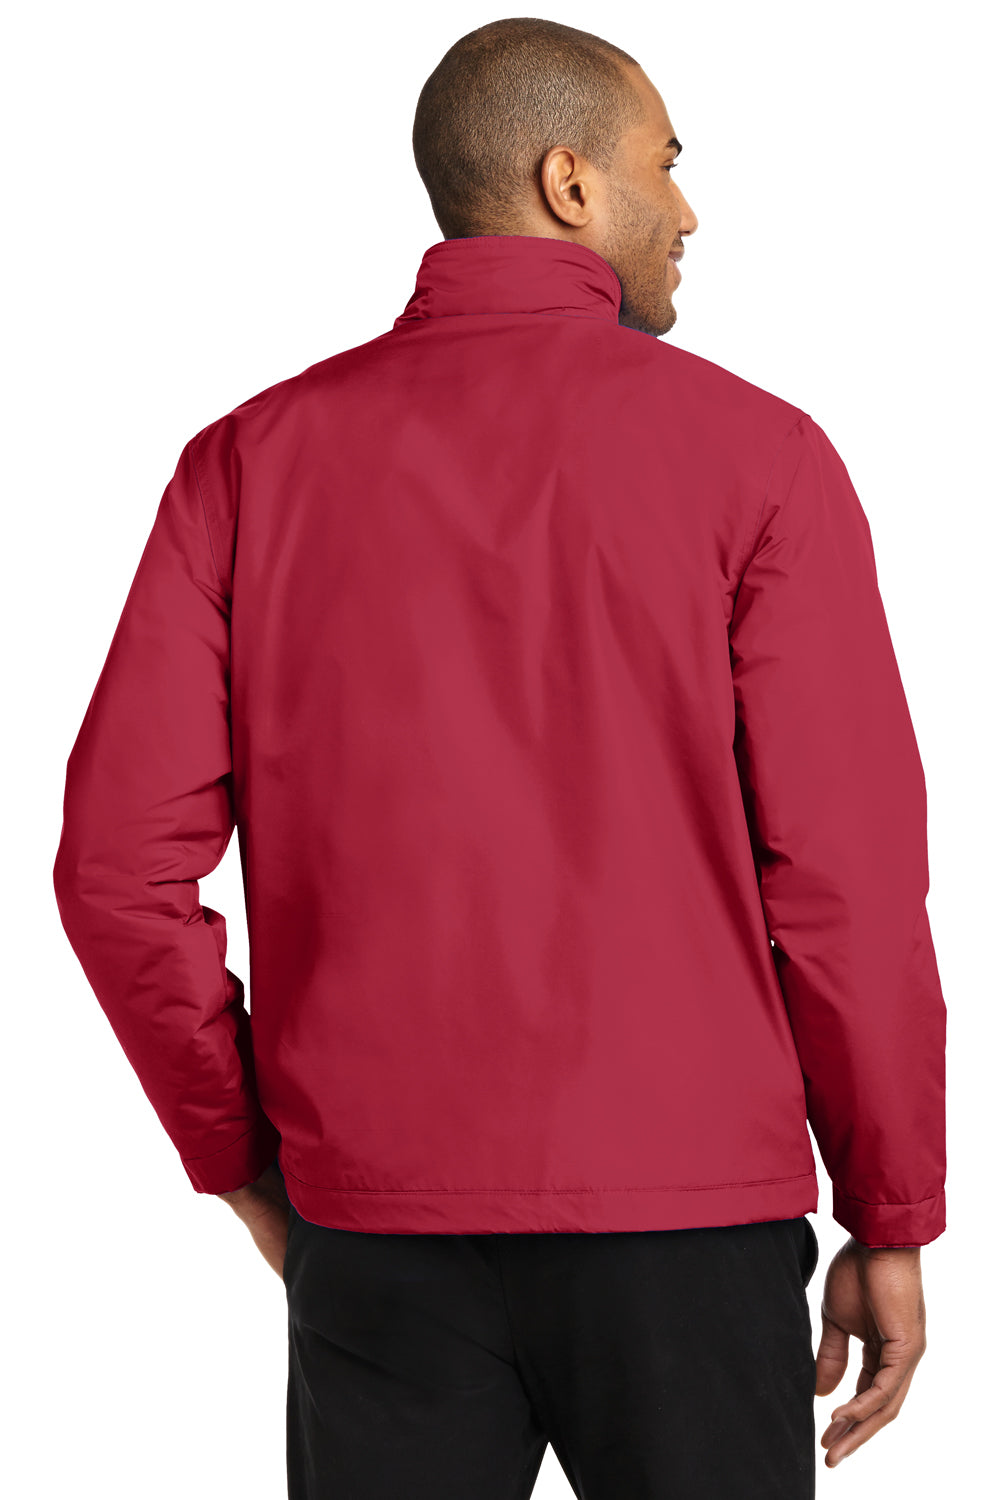 Port Authority J354 Mens Challenger II Wind & Water Resistant Full Zip Jacket Red Back